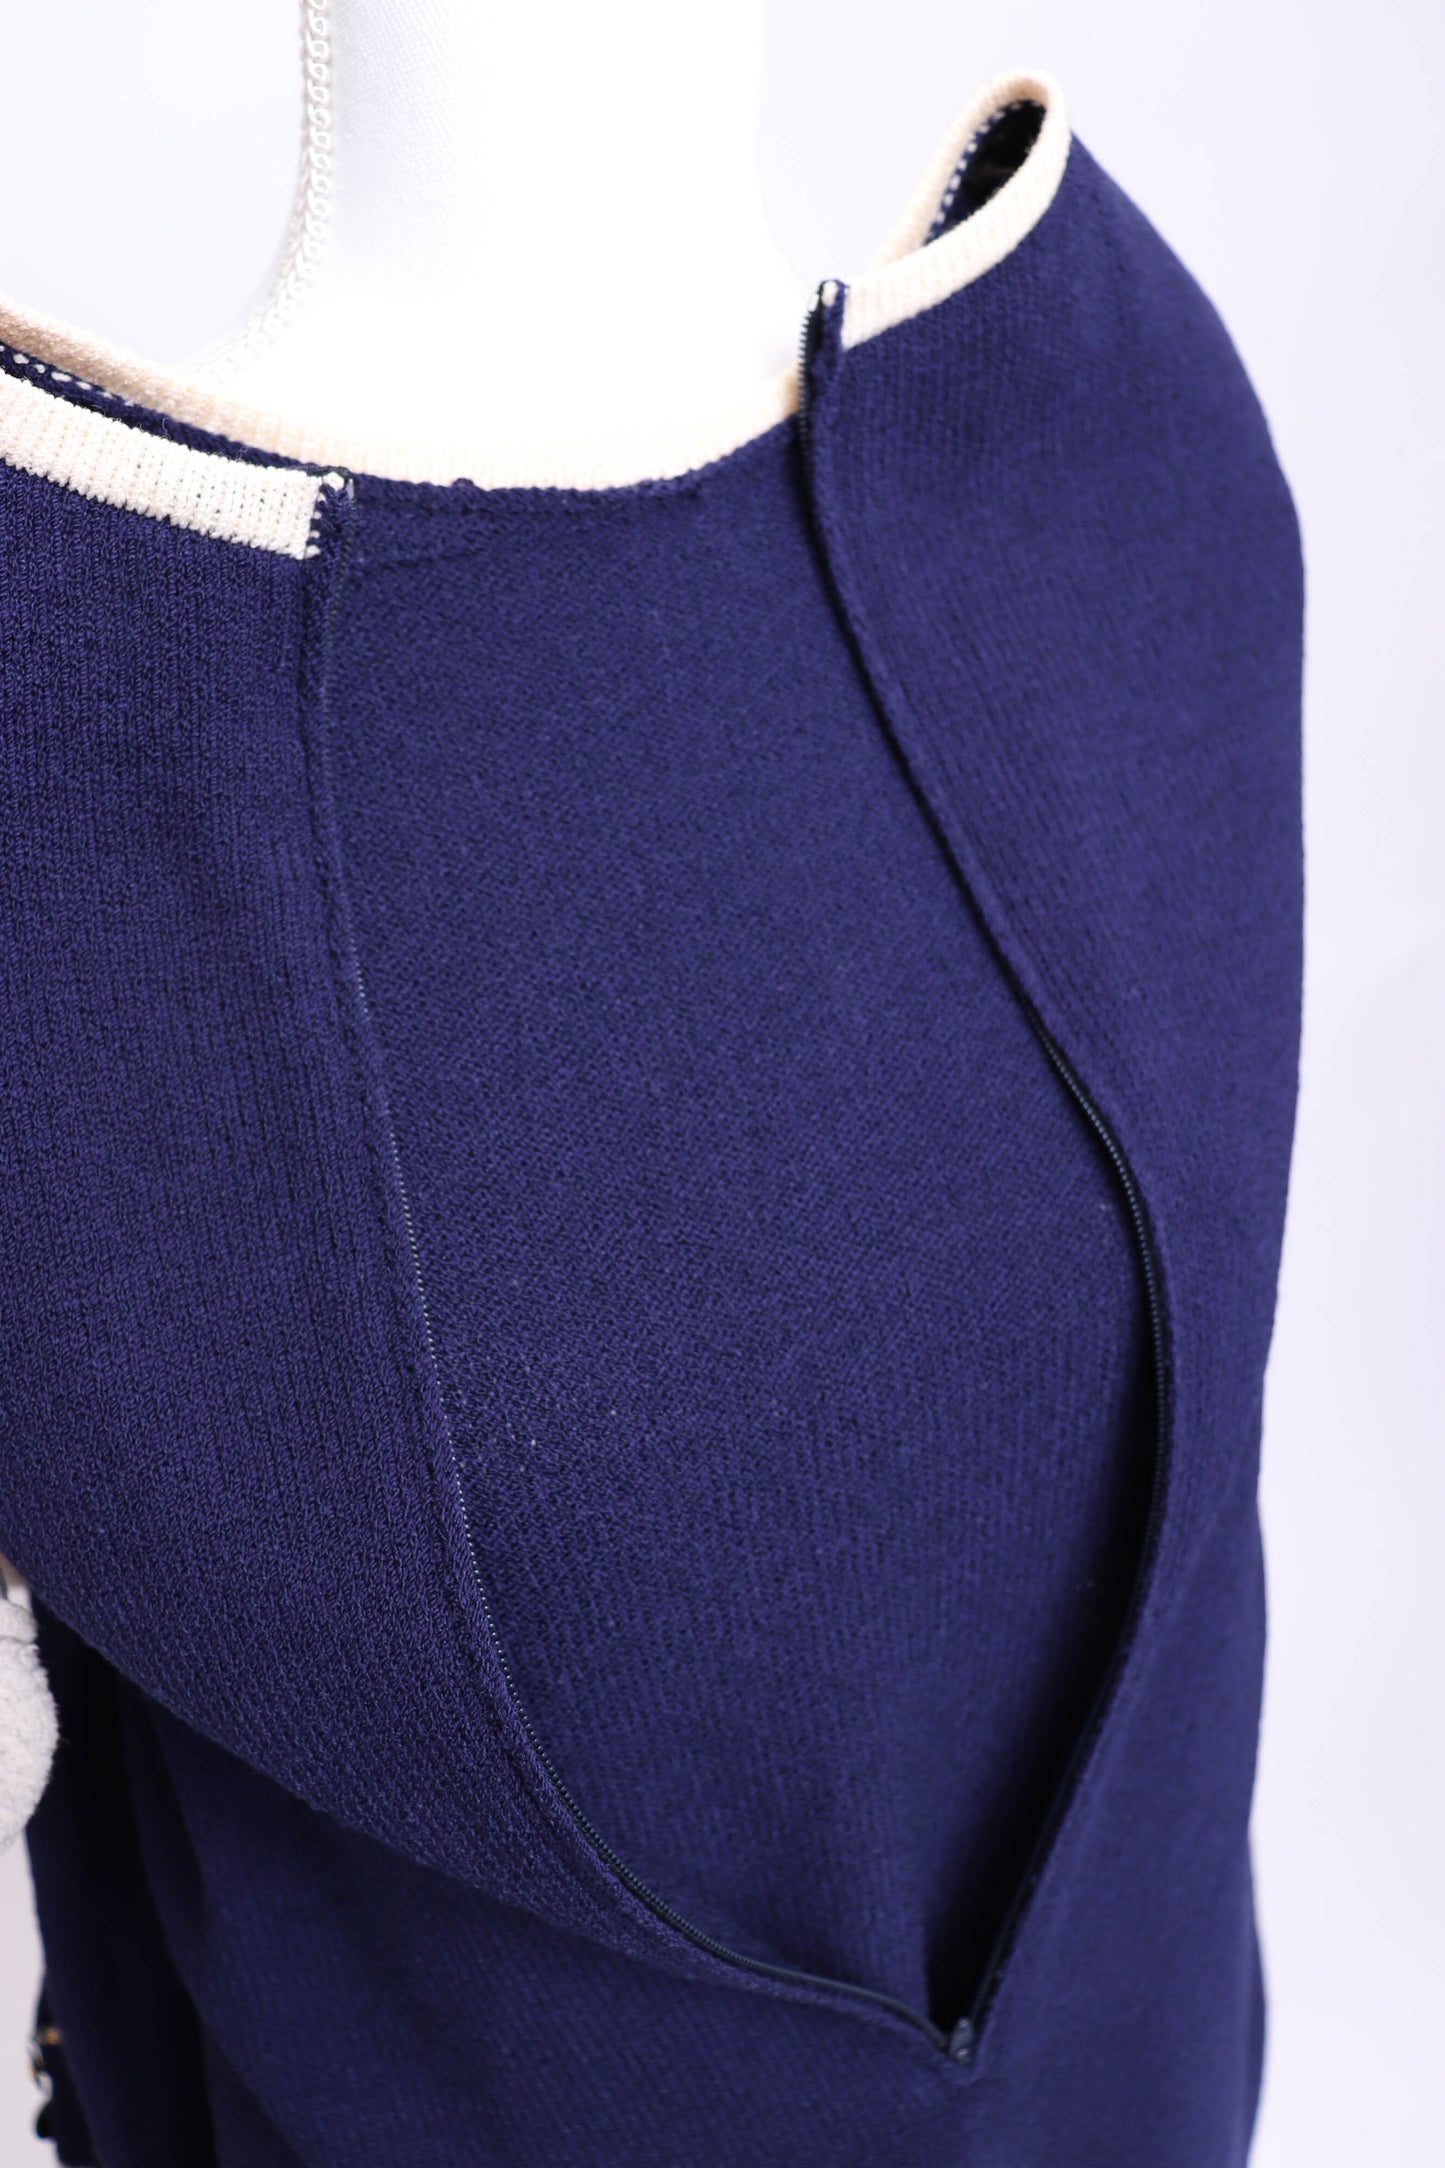 90's Carolina Herrera Navy Blue Sweater Dress L/XL